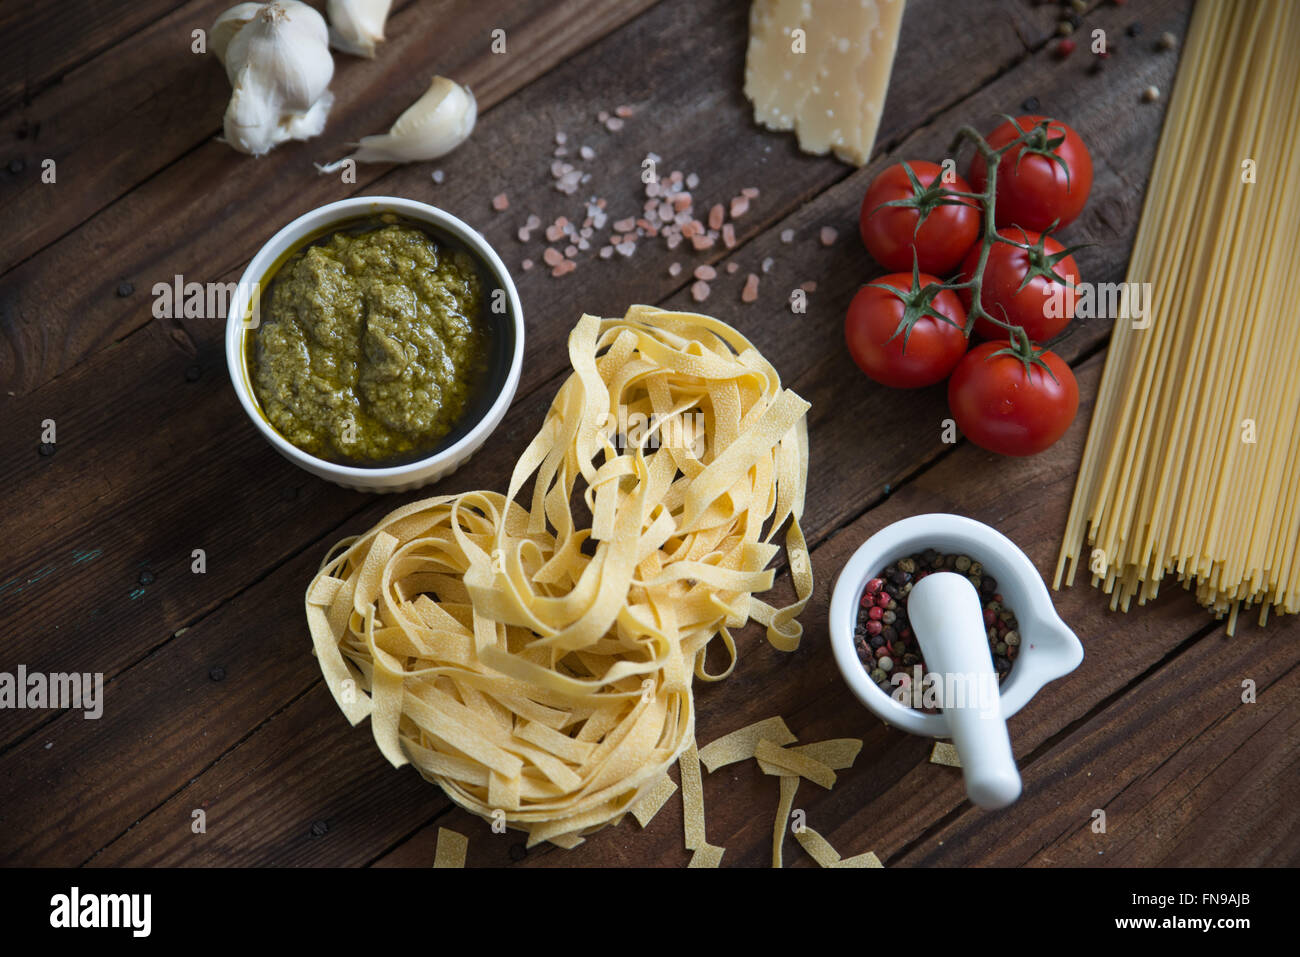 Les pâtes, le pesto, l'ail, les tomates et le parmesan sur la table Banque D'Images